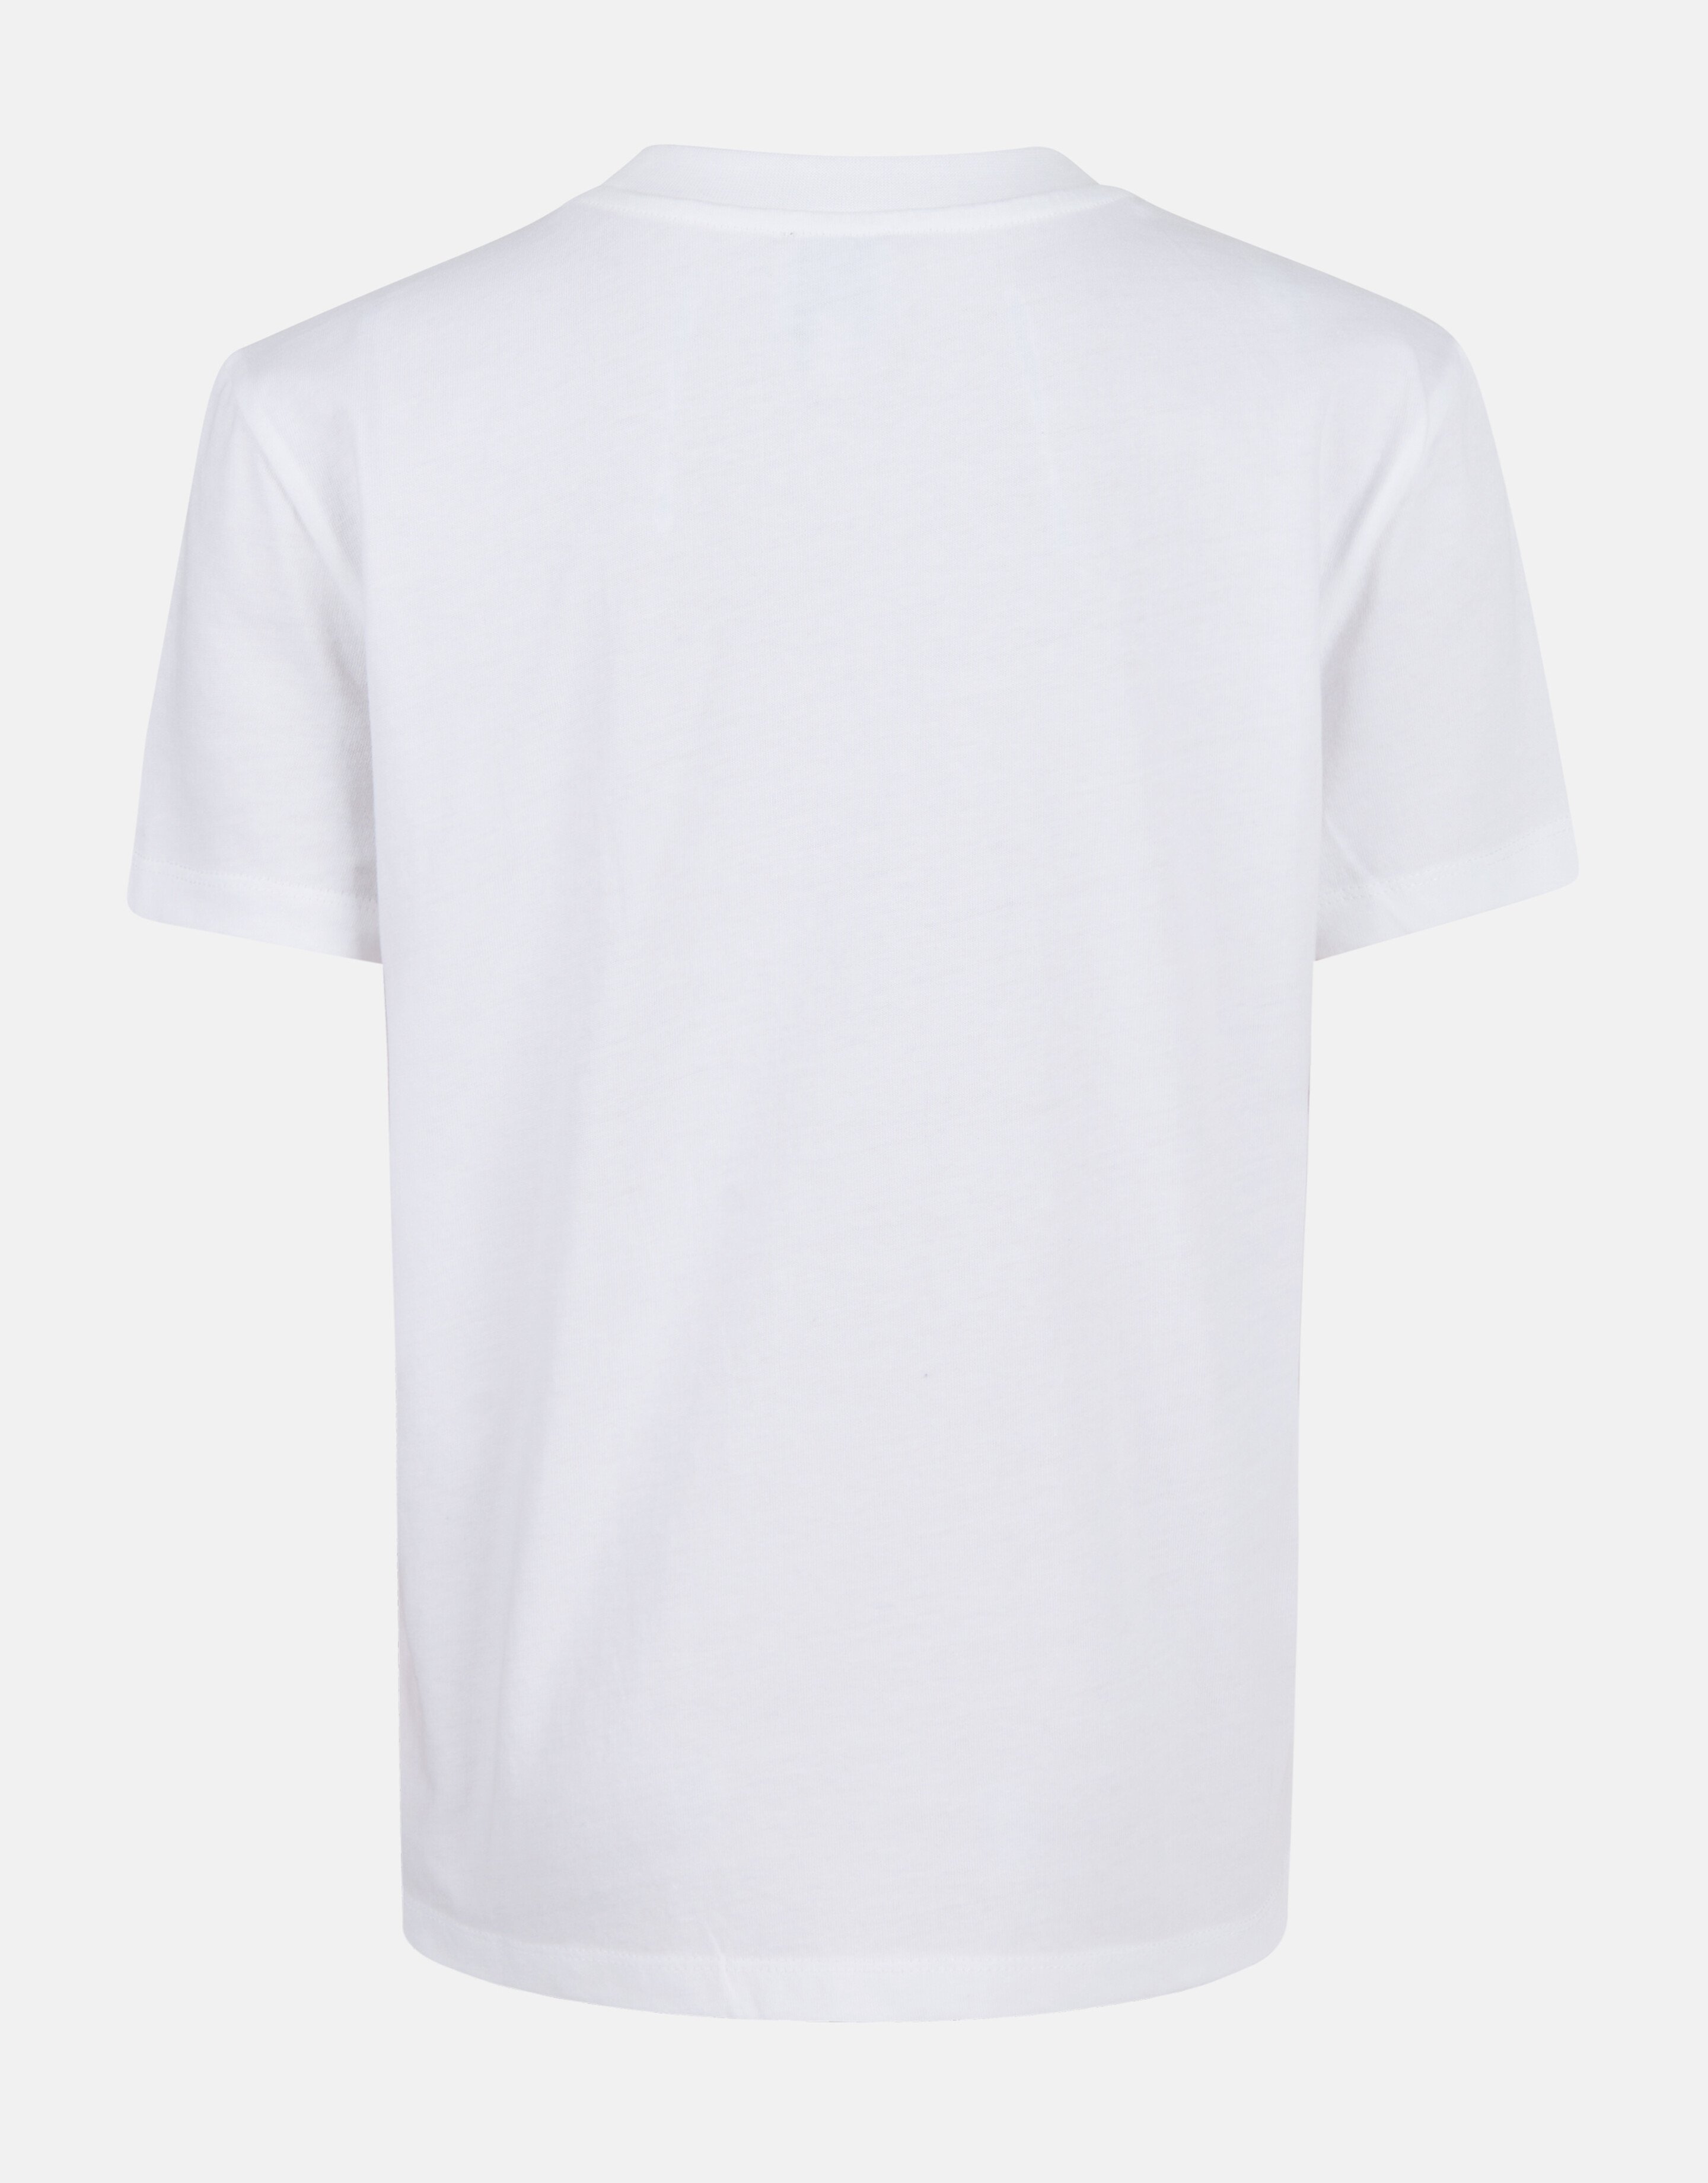 Stickerei-T-Shirt Weiß SHOEBY GIRLS